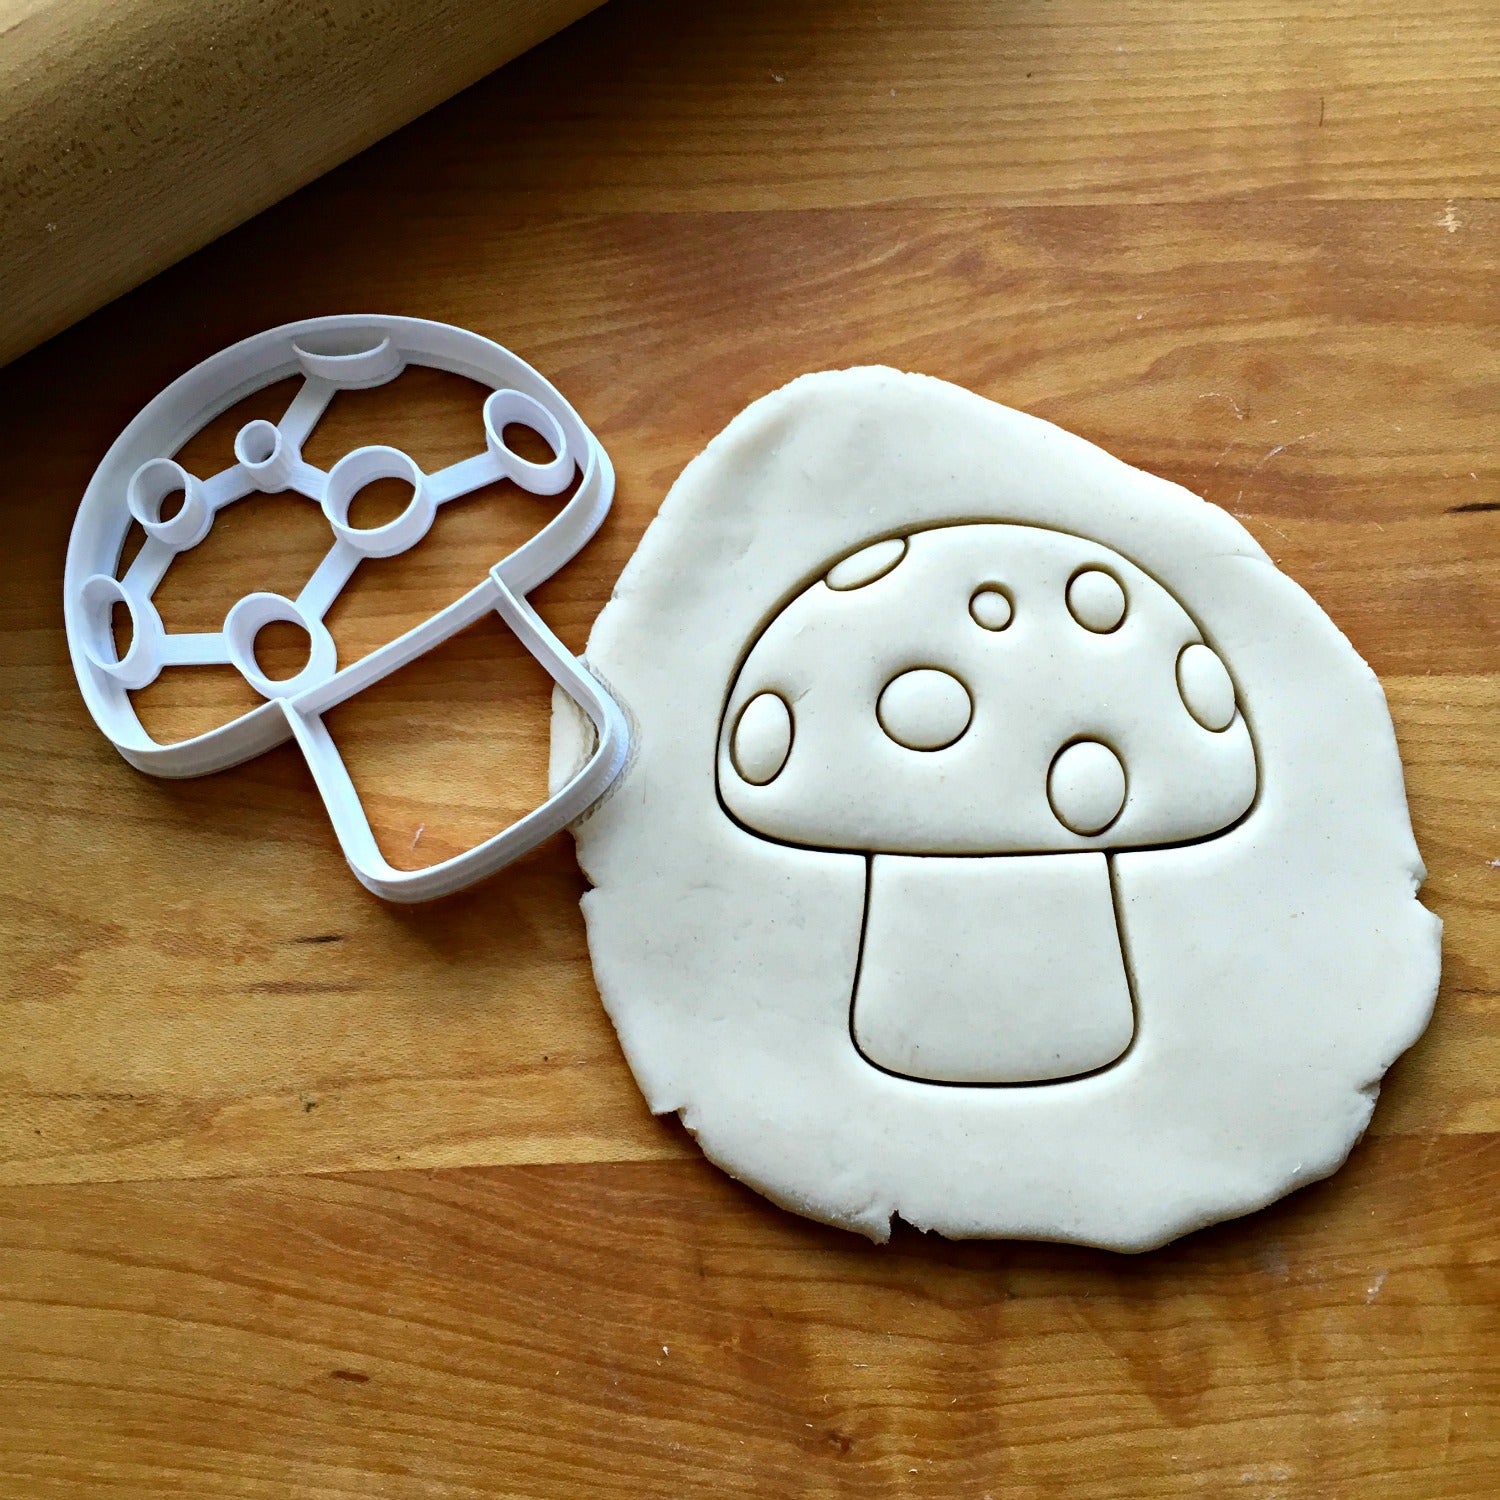 Mushroom Gnome Home Cookie Cutter – Crumbs Cutters